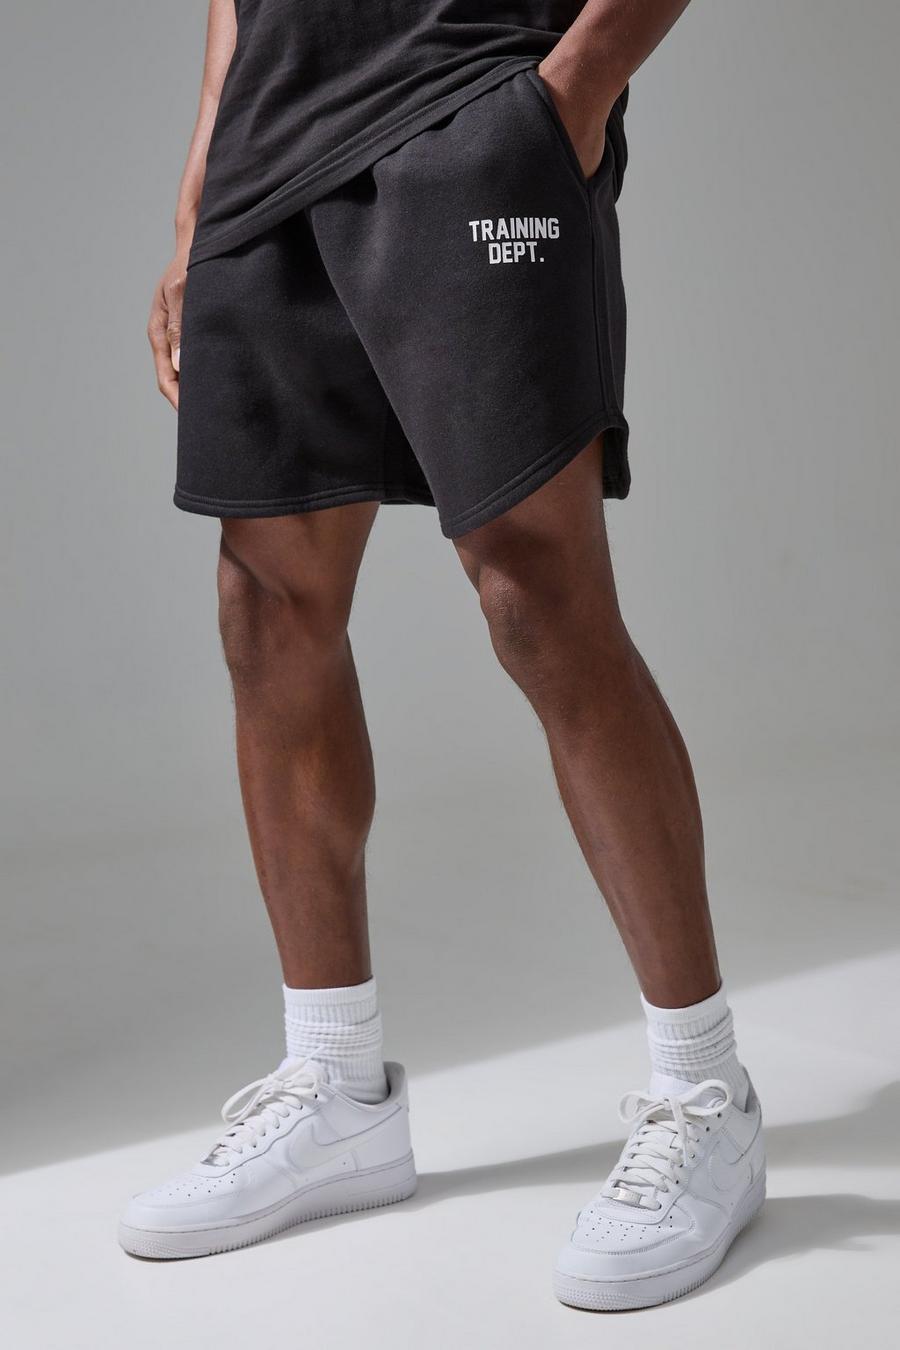 Pantalón corto MAN Active Training Dept de tela jersey y vóleibol, Black